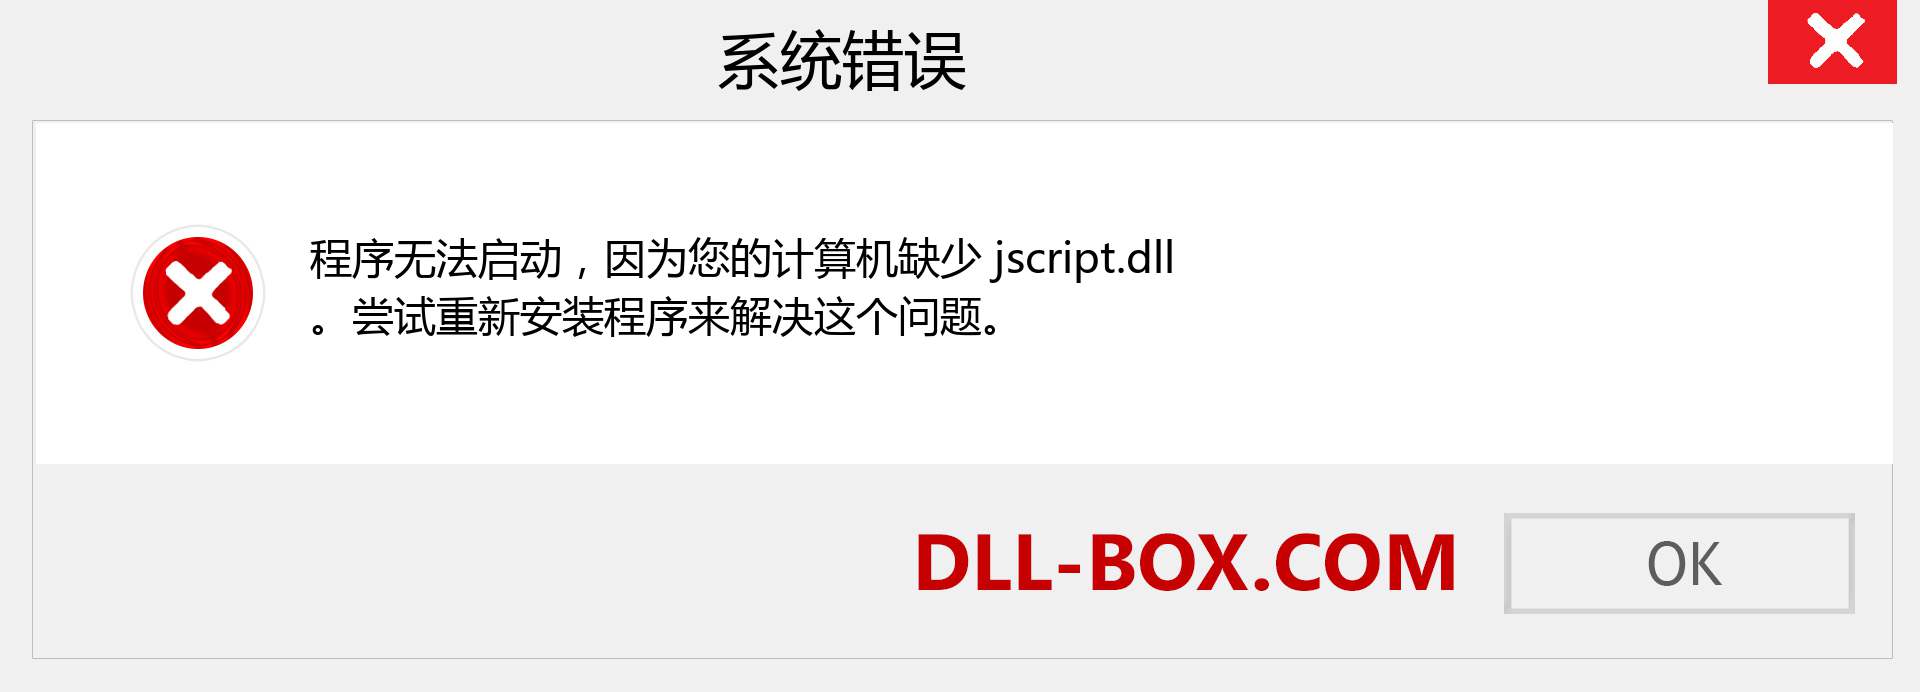 jscript.dll 文件丢失？。 适用于 Windows 7、8、10 的下载 - 修复 Windows、照片、图像上的 jscript dll 丢失错误